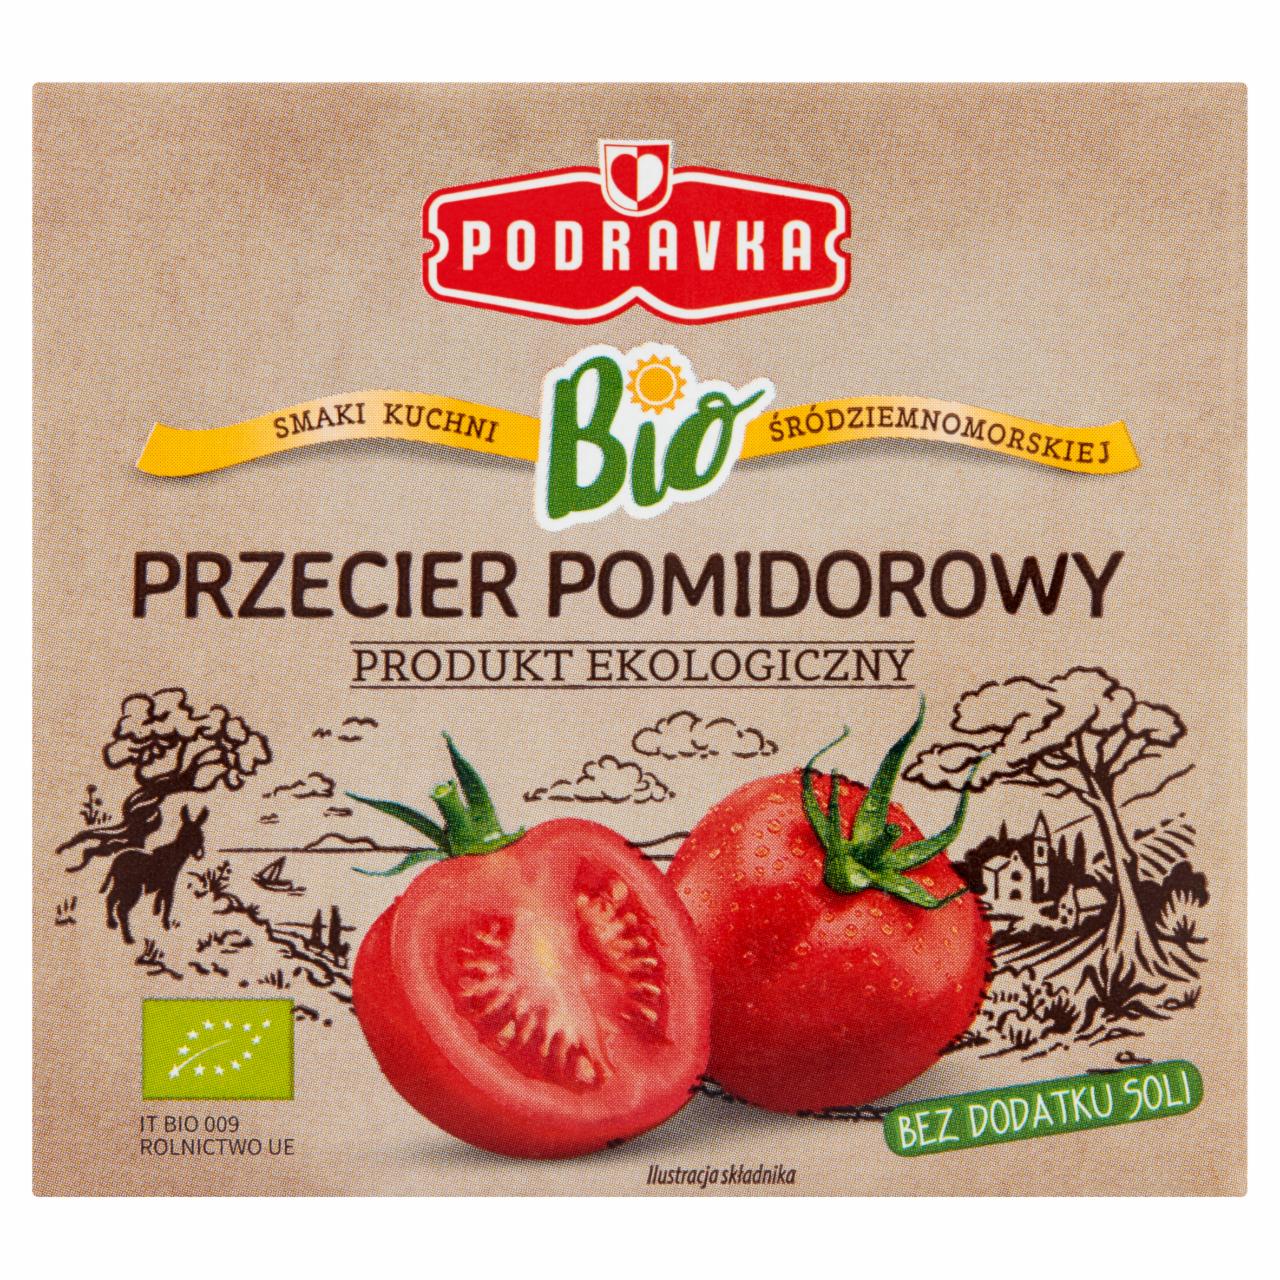 Zdjęcia - Podravka Bio Przecier pomidorowy 500 g